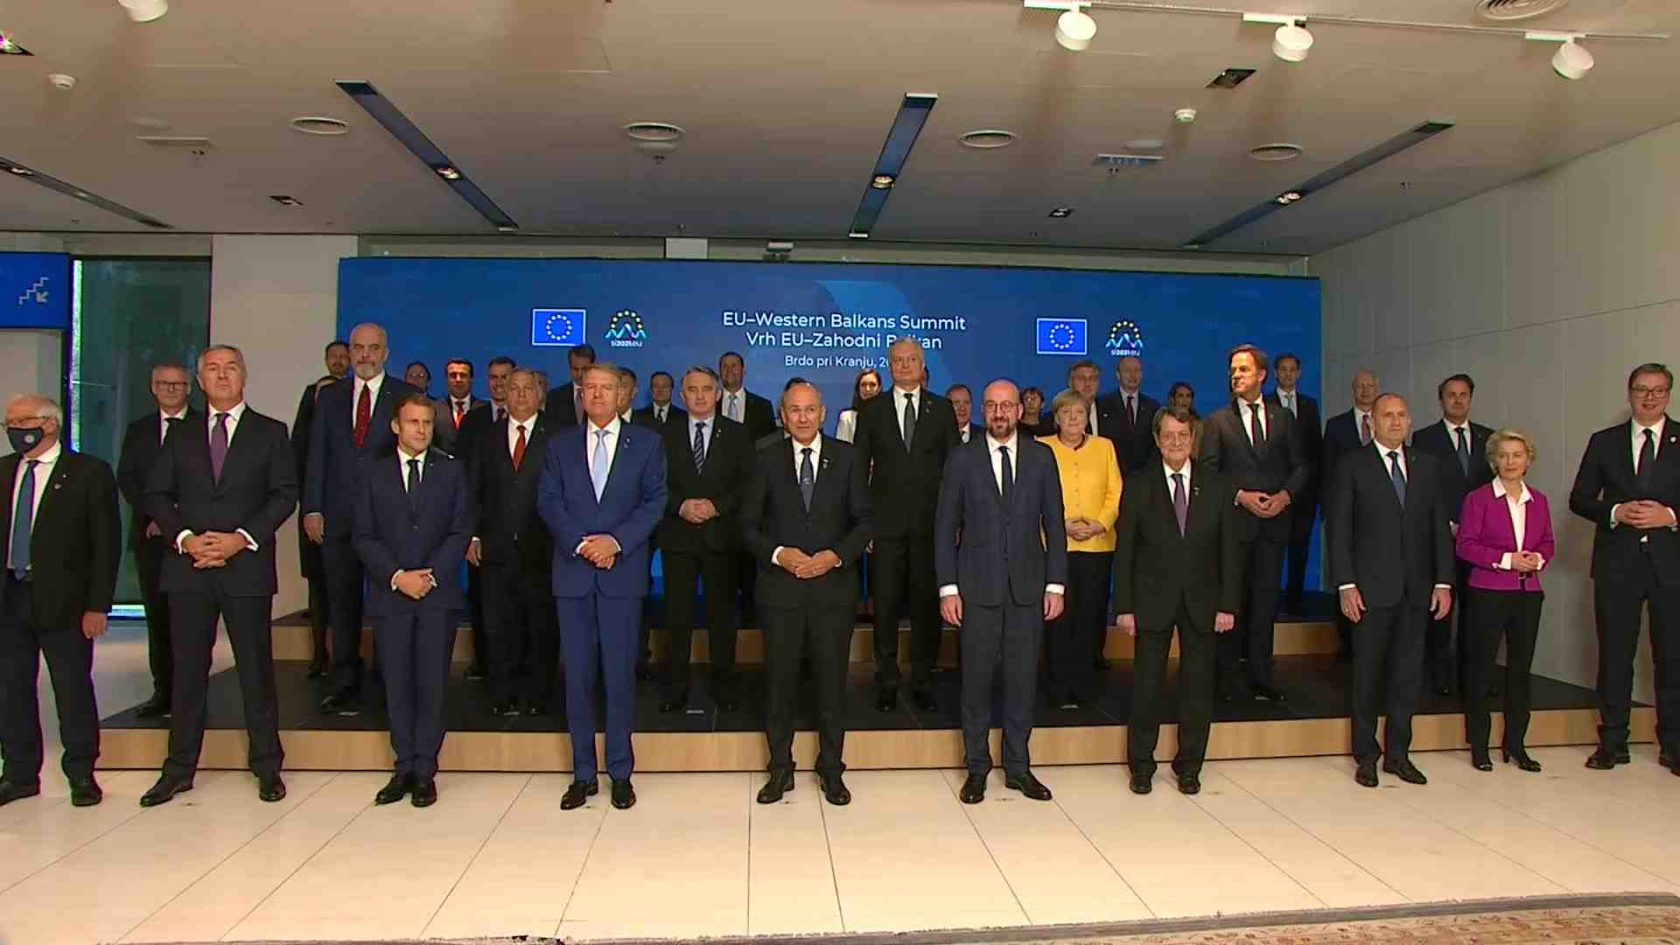 Le promesse infrante dell’Unione Europea ai Balcani